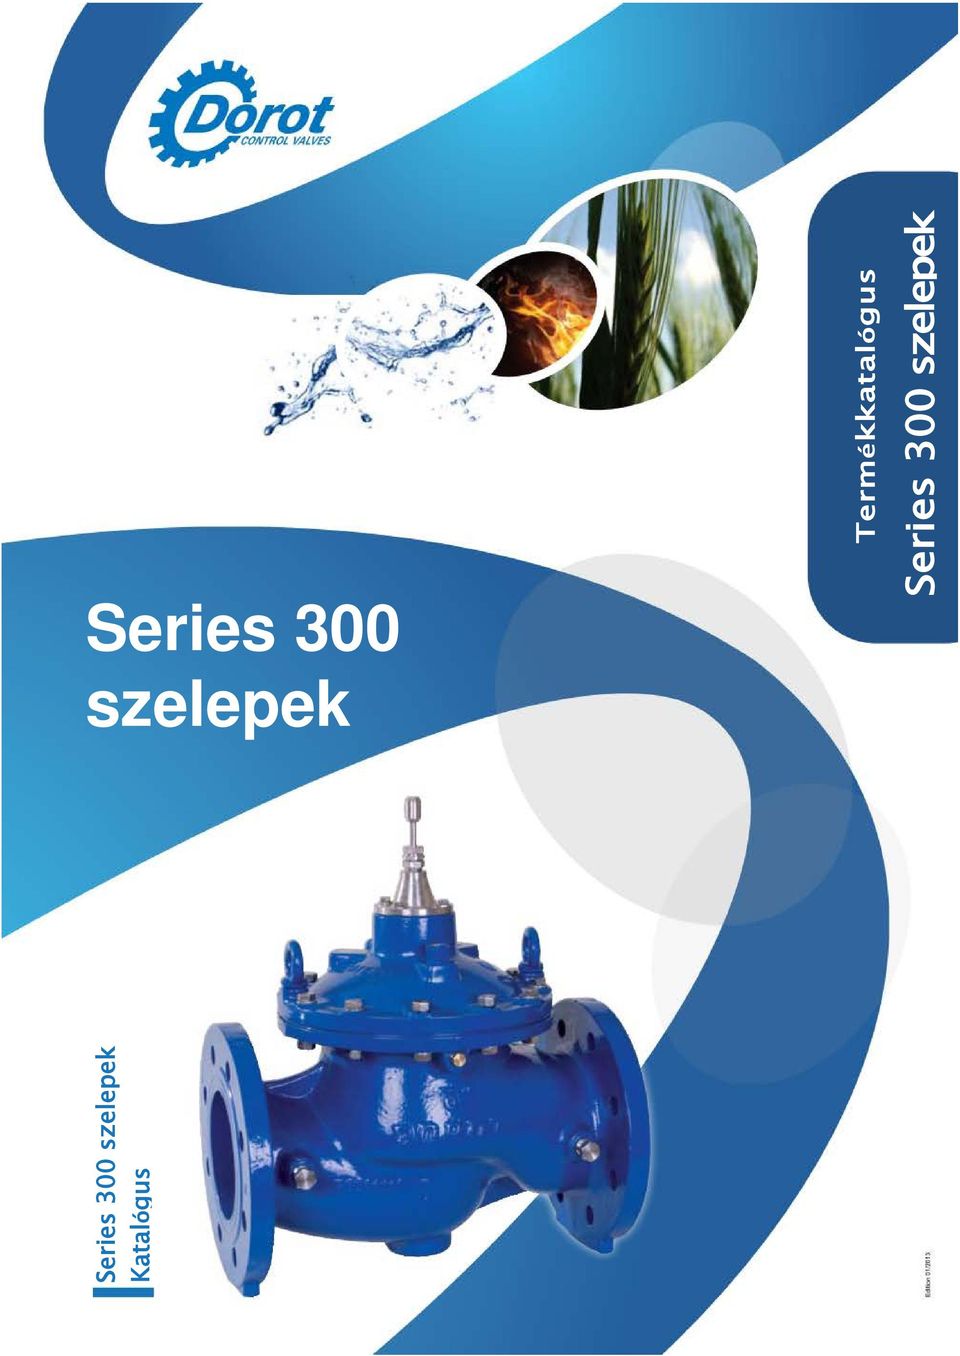 szelepek Series 300 Termékkatalógus Series 300 szelepek Katalógus - PDF  Free Download